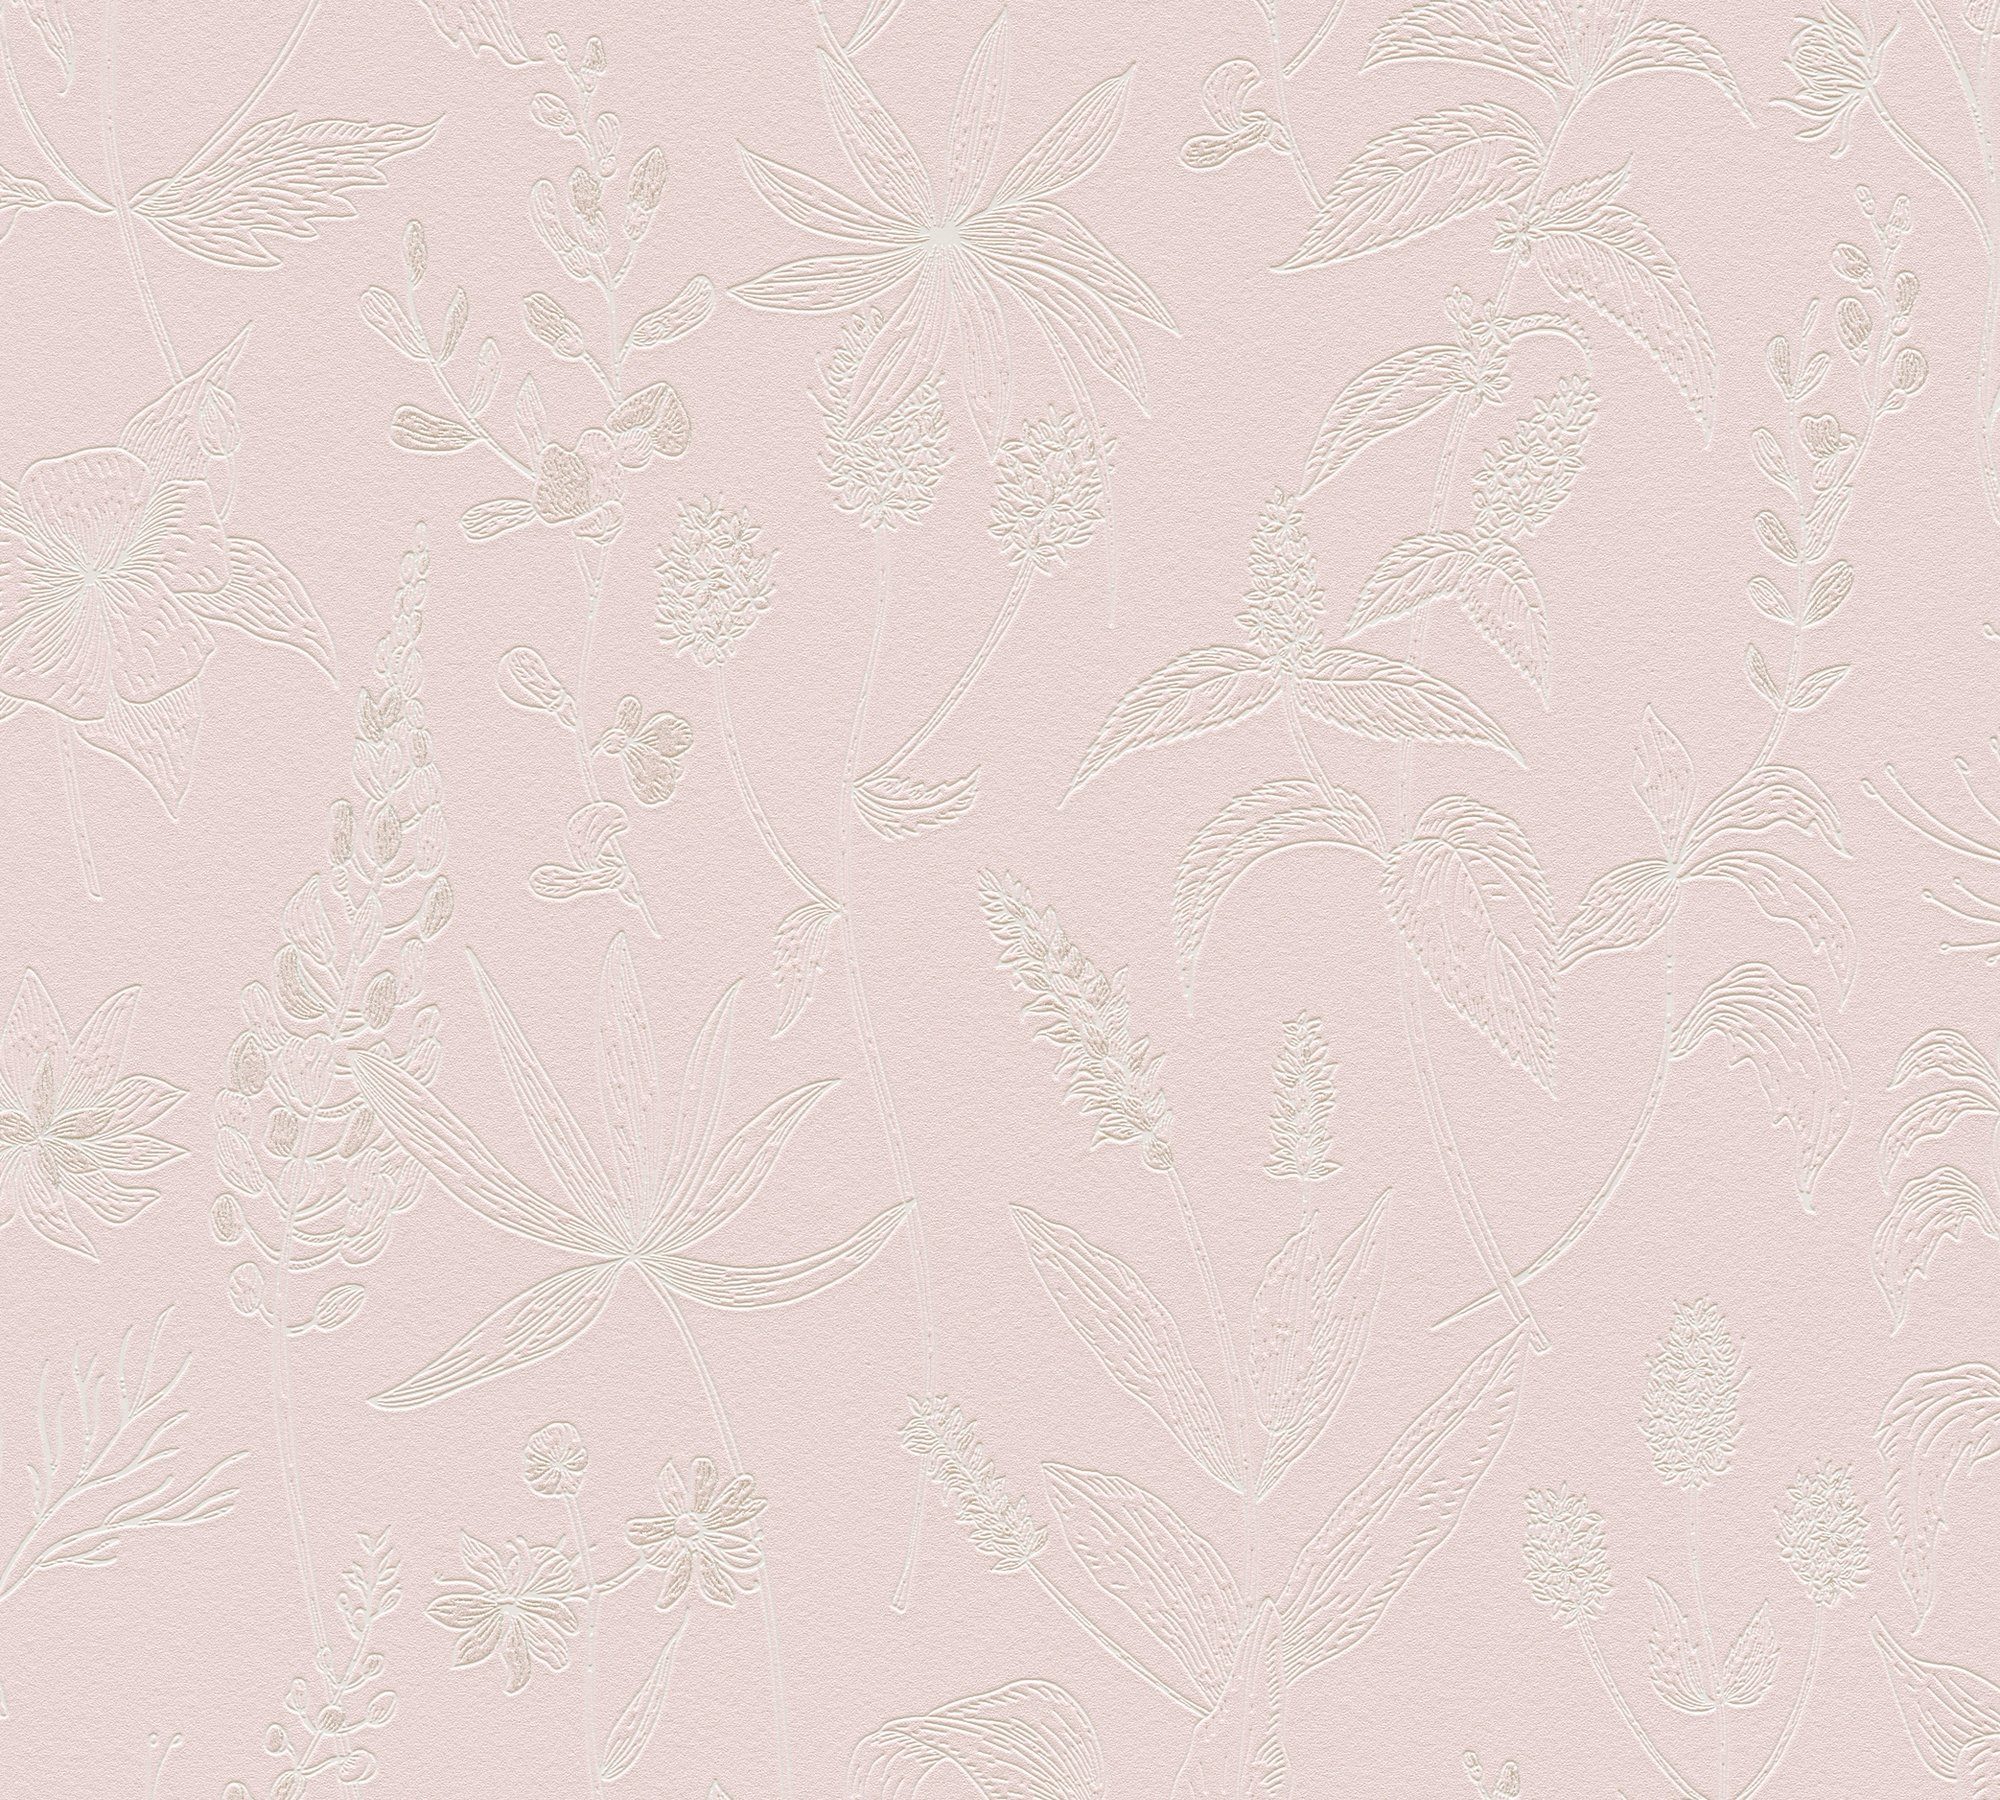 A.S. Création Vliestapete Jette Joop floral natürlich, strukturiert, floral, Blumentapete Tapete Streifen rosa